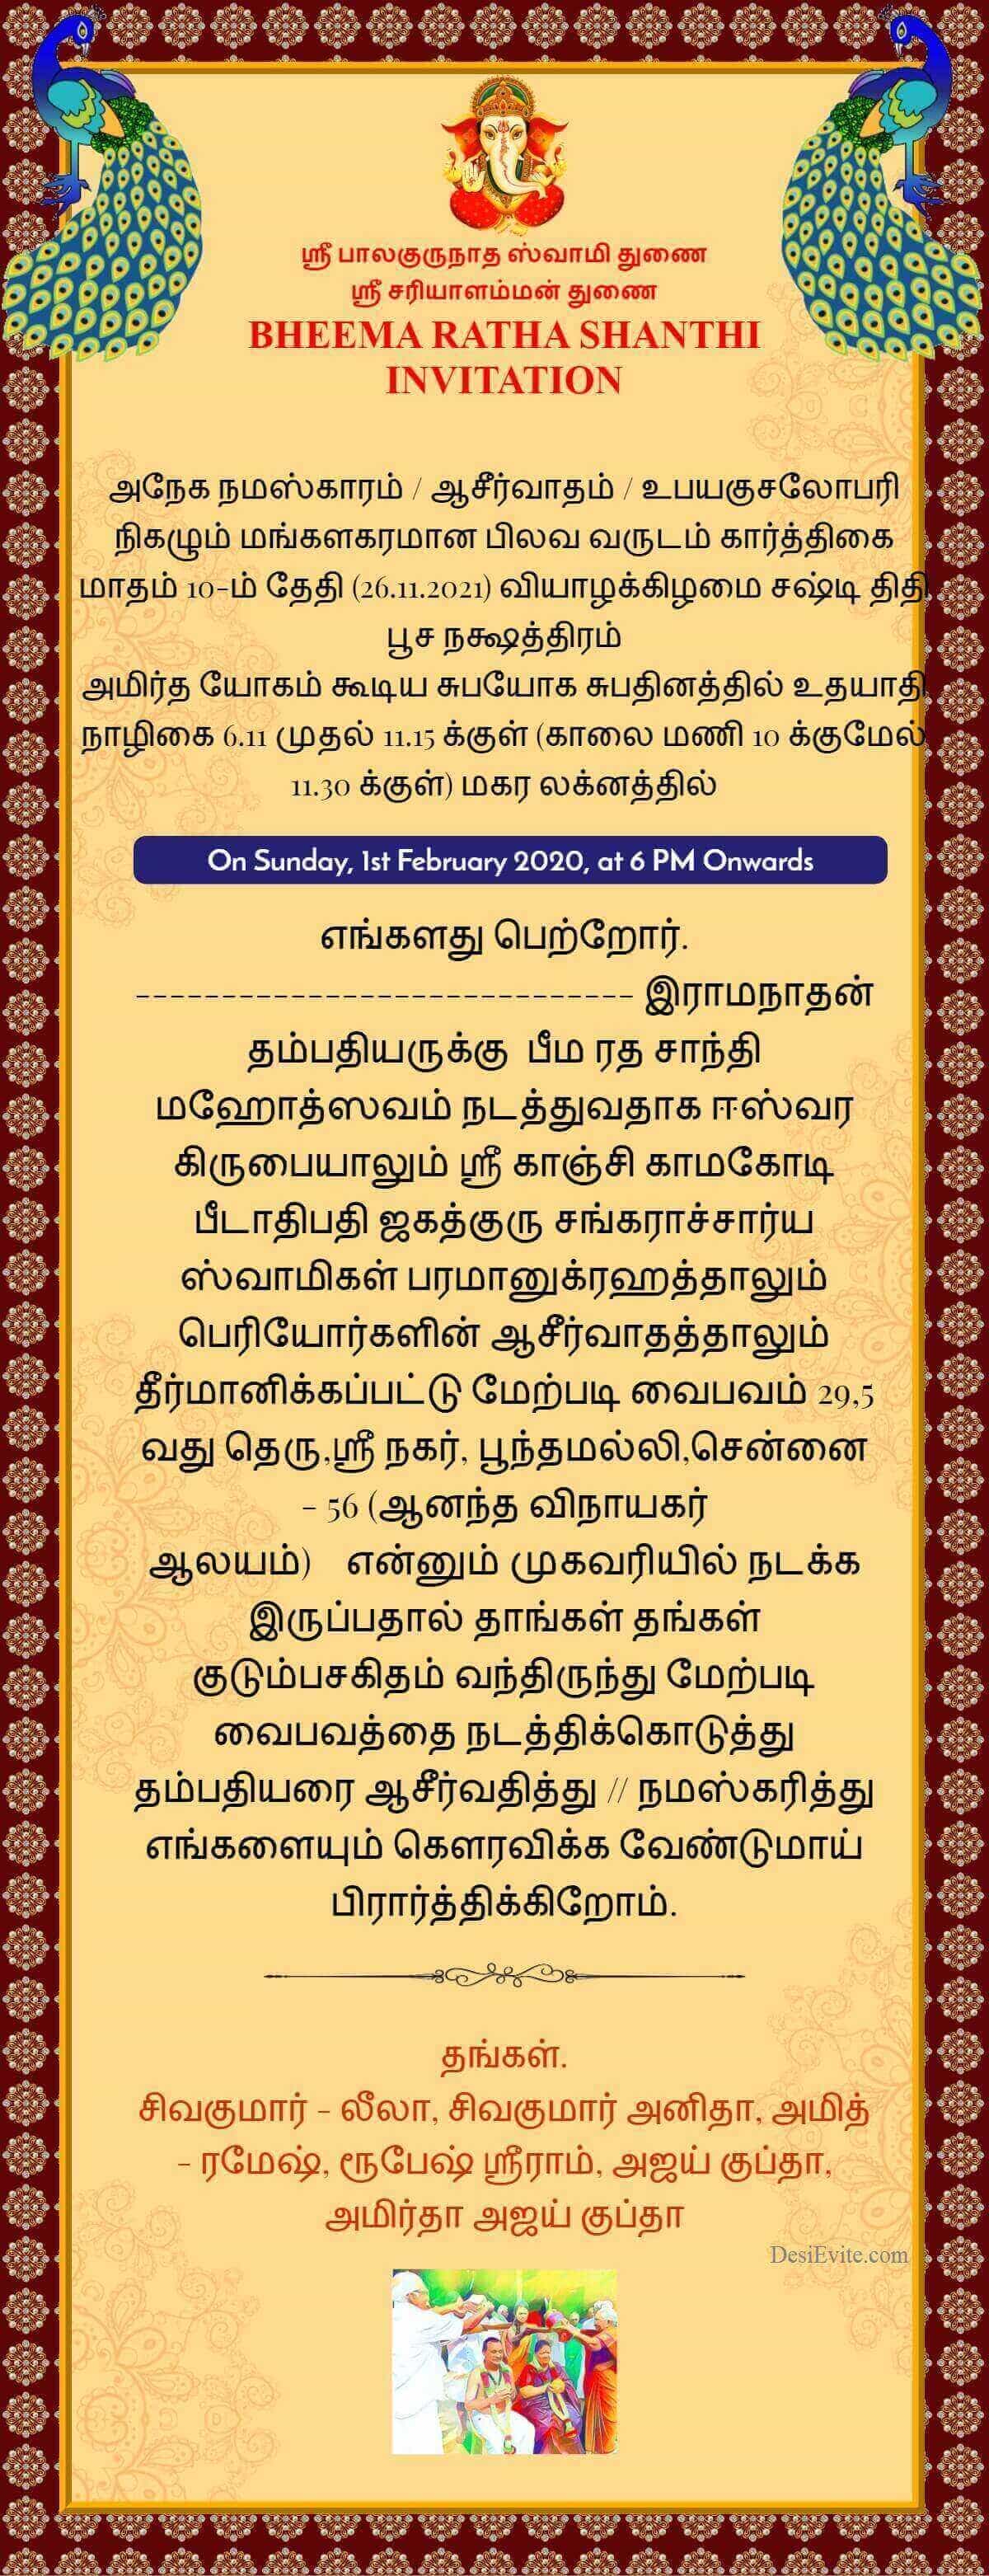 bheema-ratha-shanthi-invitation-card-tamil